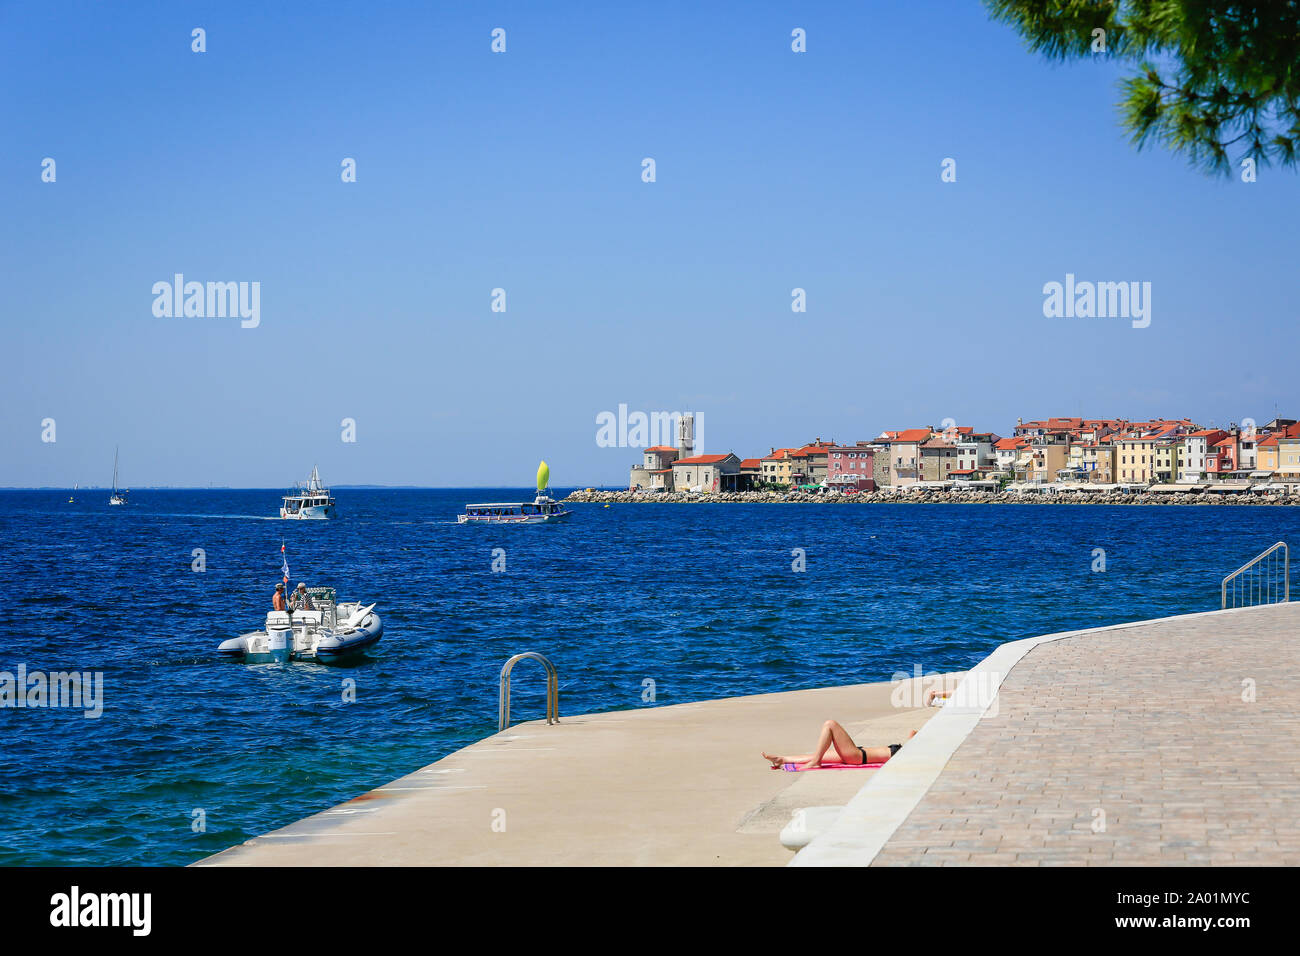 Piran, Istrie, Slovénie - baigneurs à la plage en béton Fornace de la ville portuaire Piran à la mer Méditerranée. Piran, Istrien, Slowenien - Badende Banque D'Images